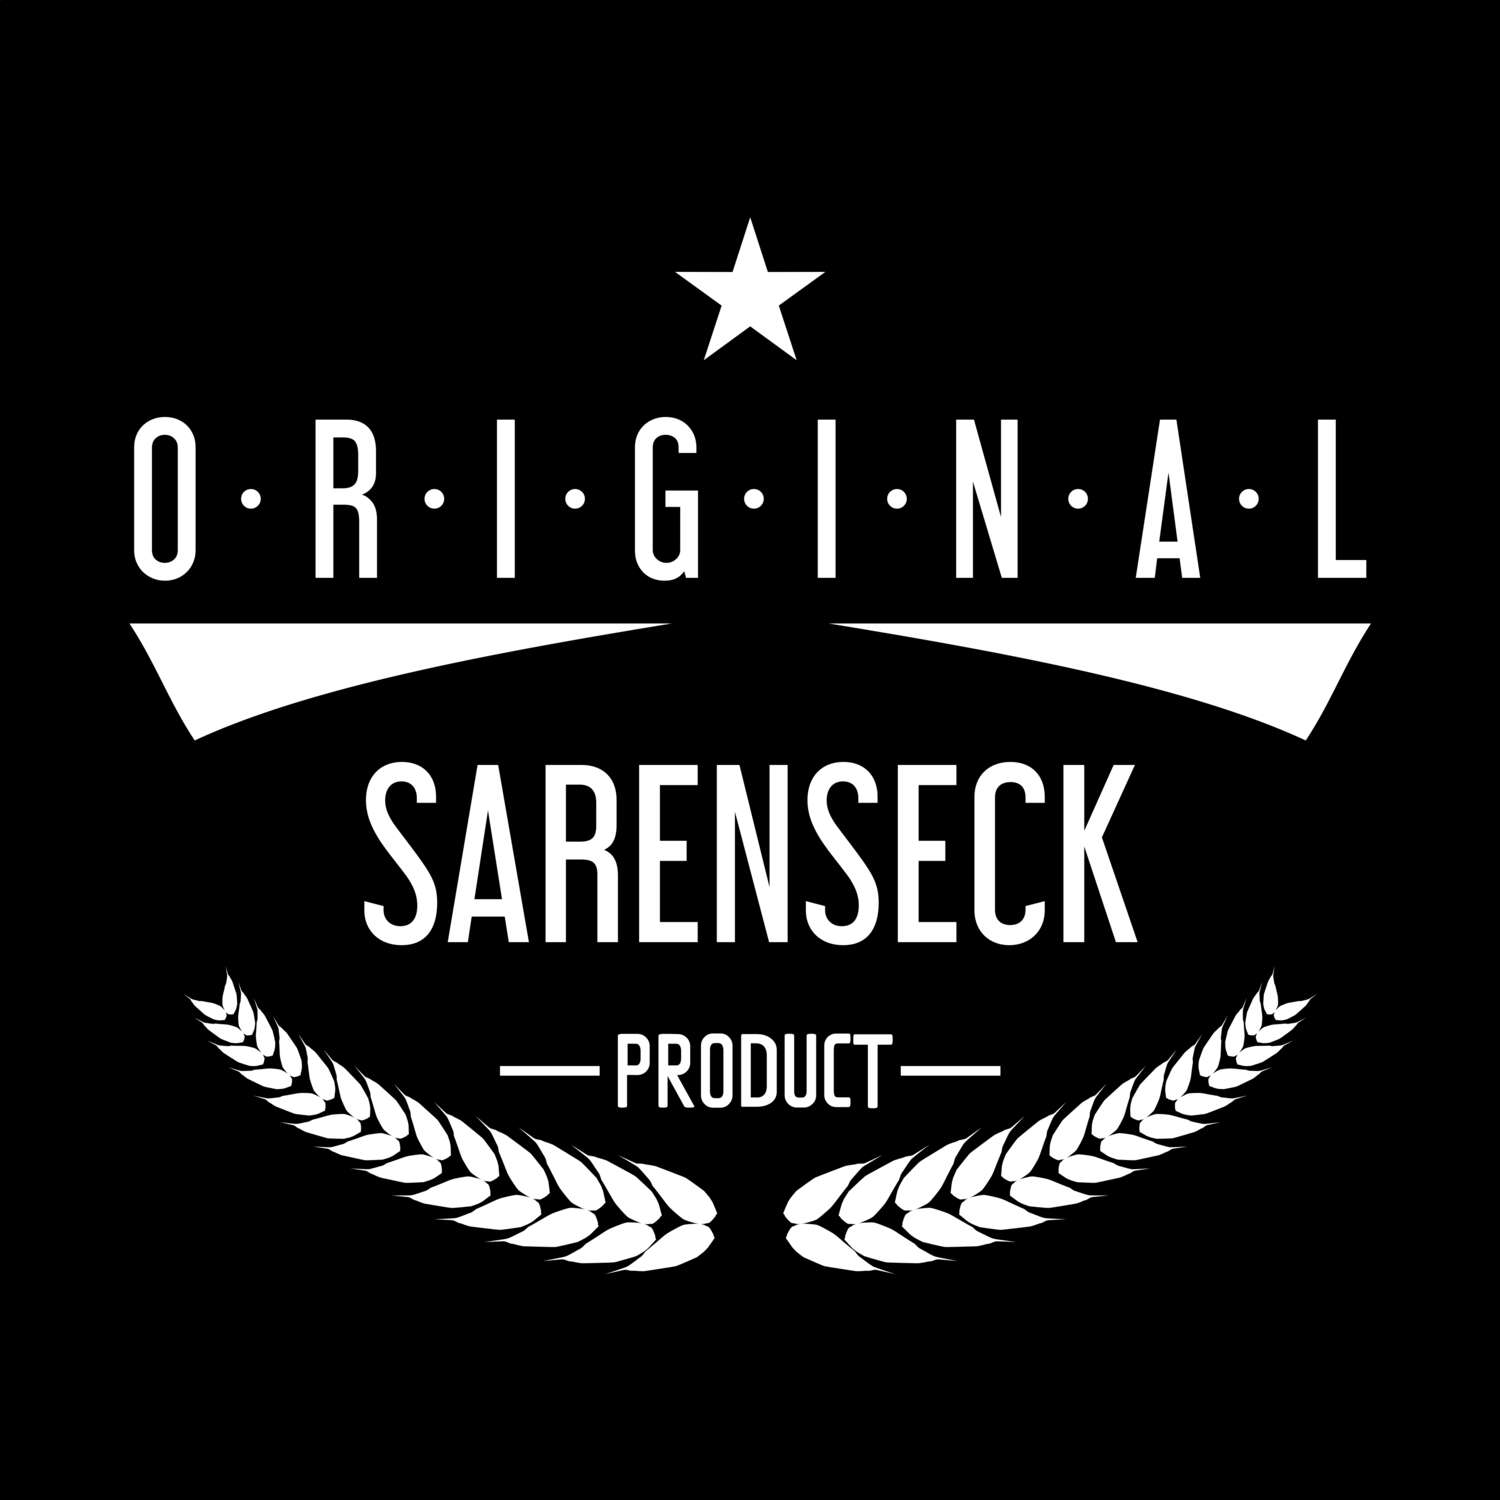 Sarenseck T-Shirt »Original Product«